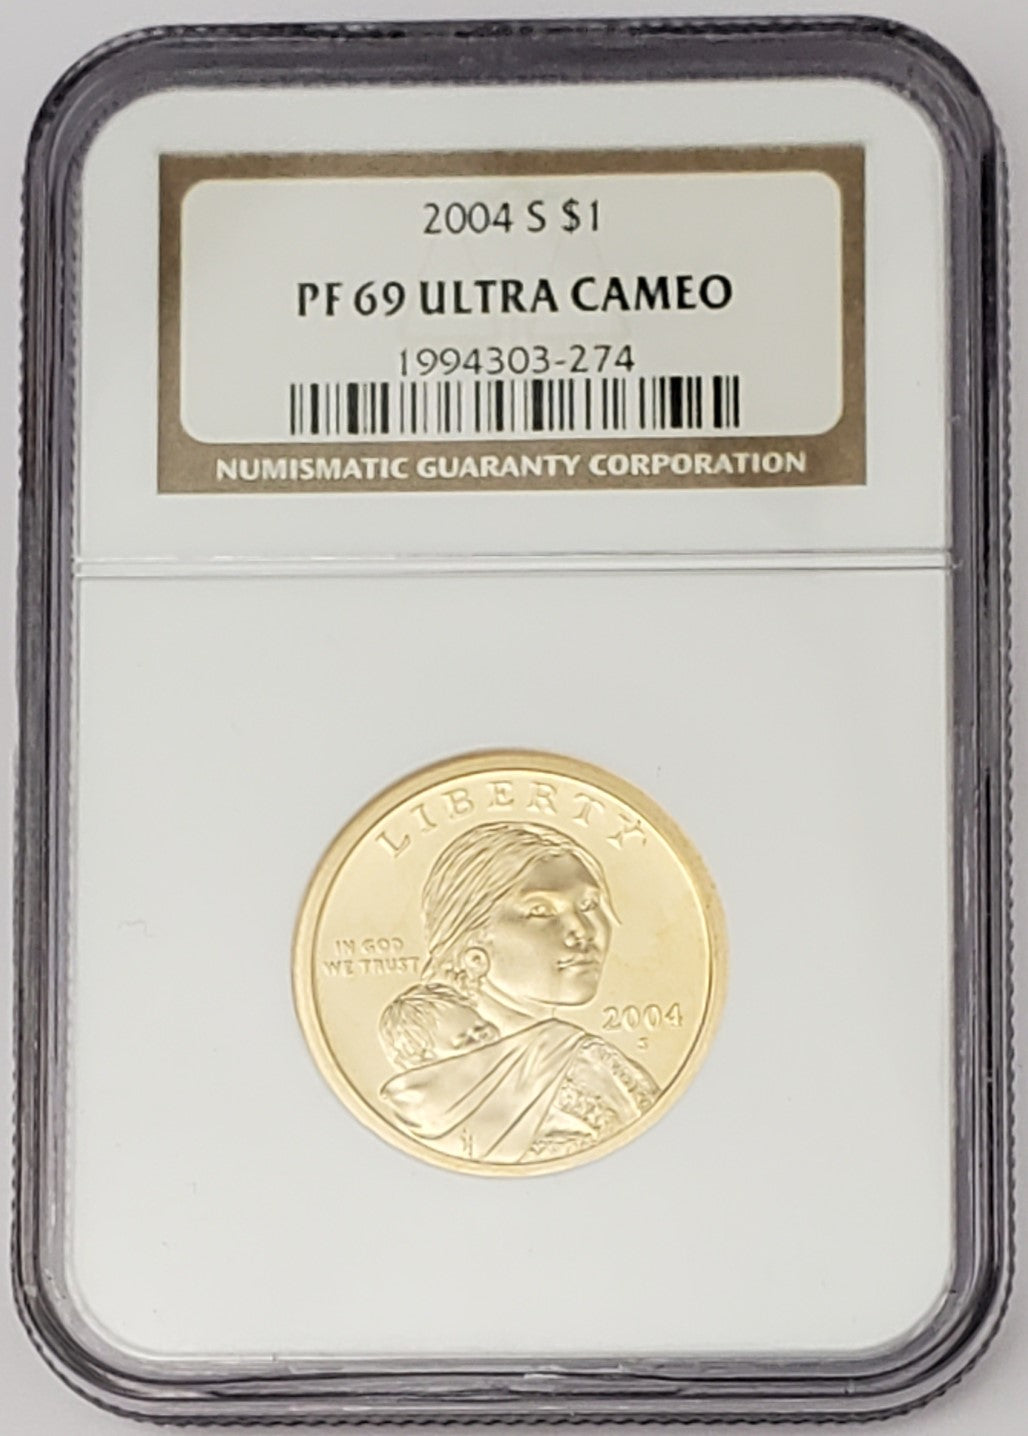 2004 S Proof Sacagawea Dollar $1 PF 69 Ultra Cameo NGC